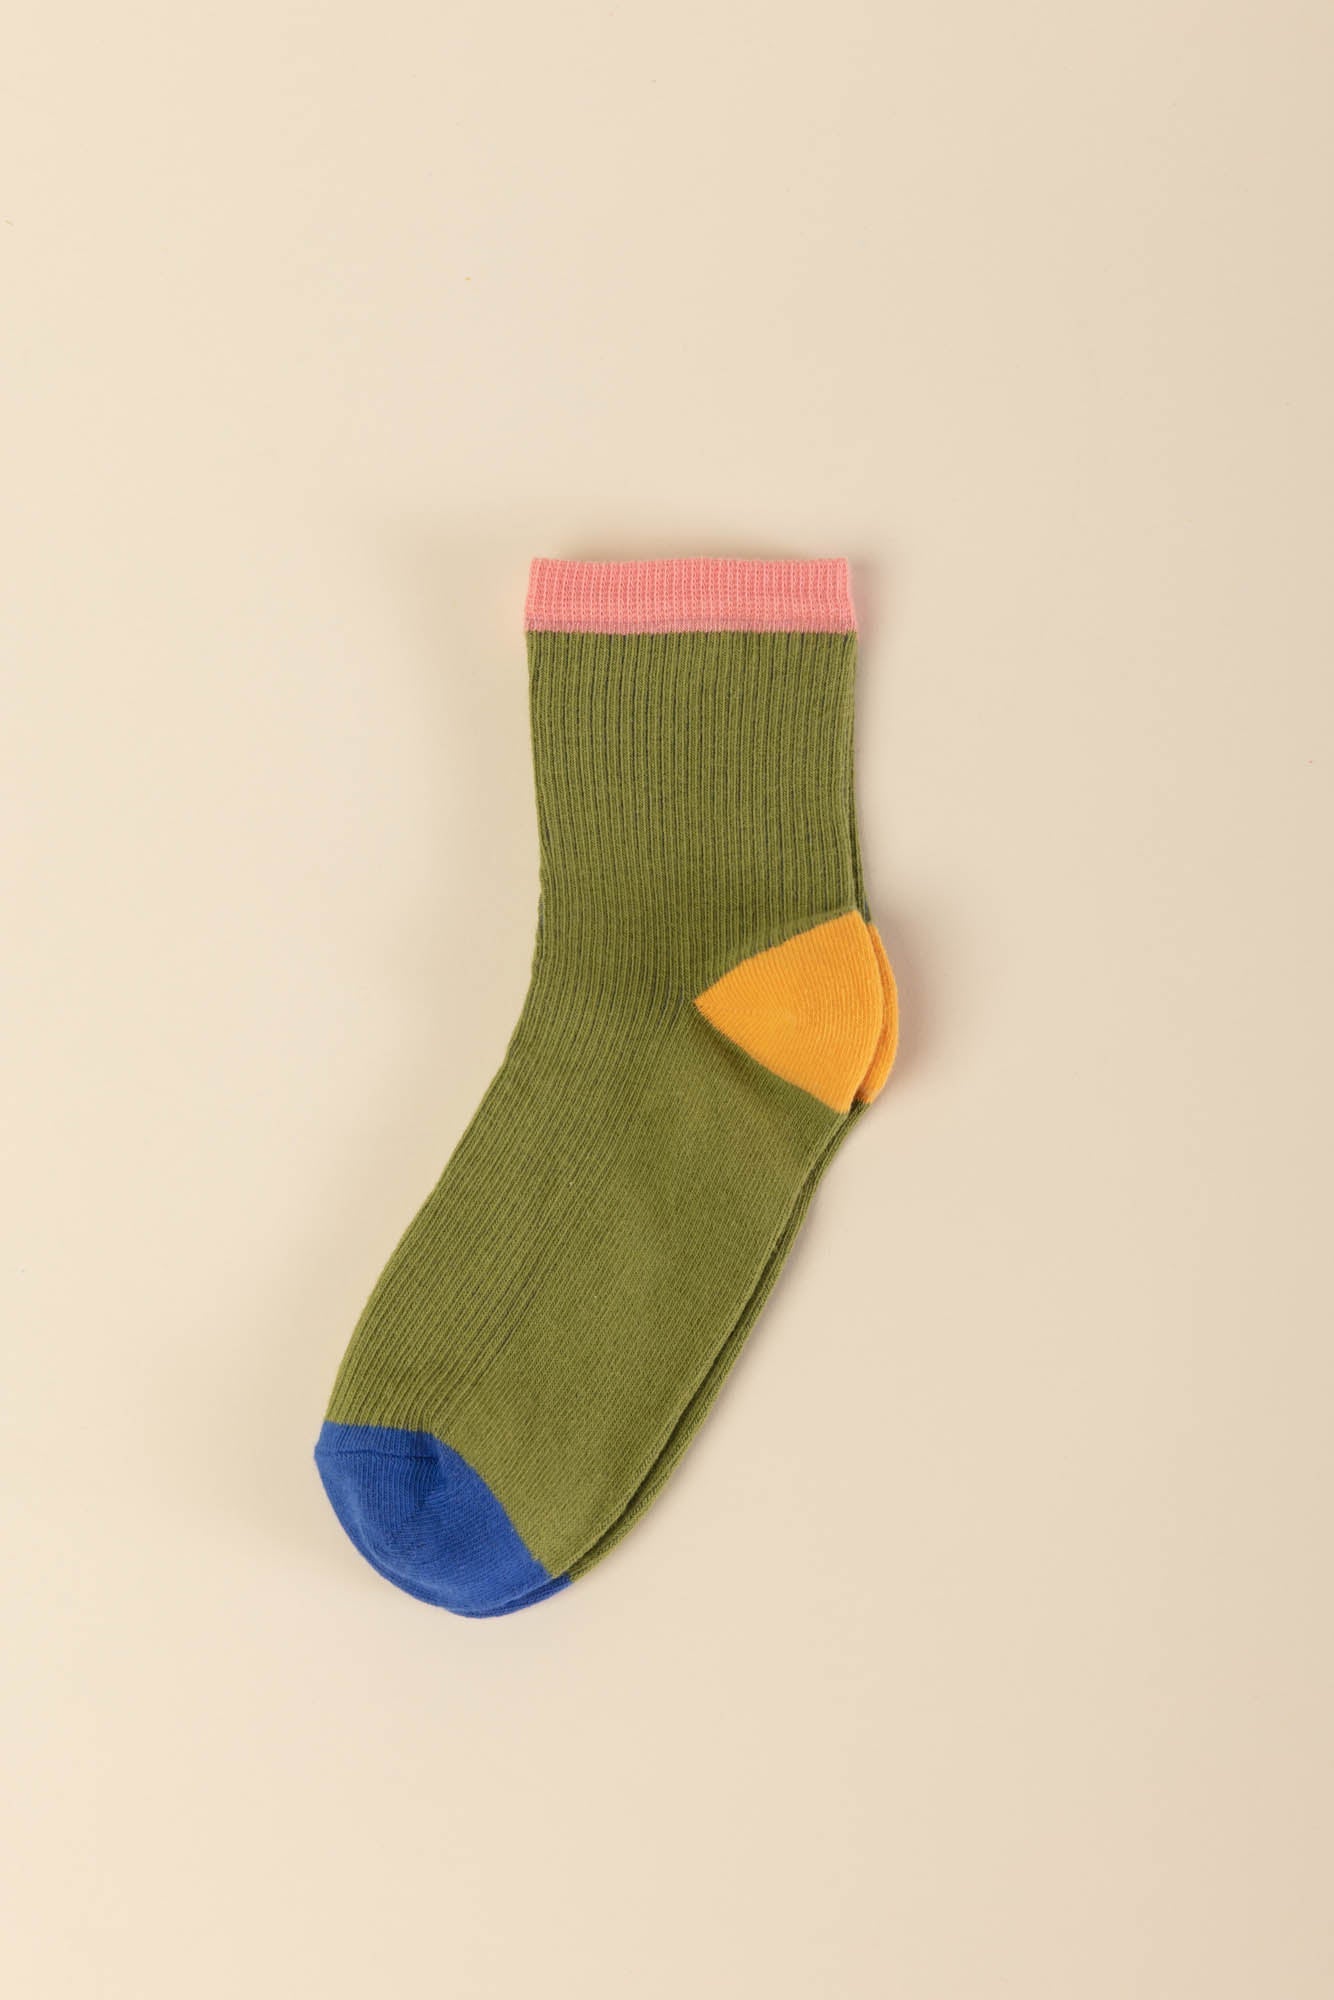 Cornish sock green